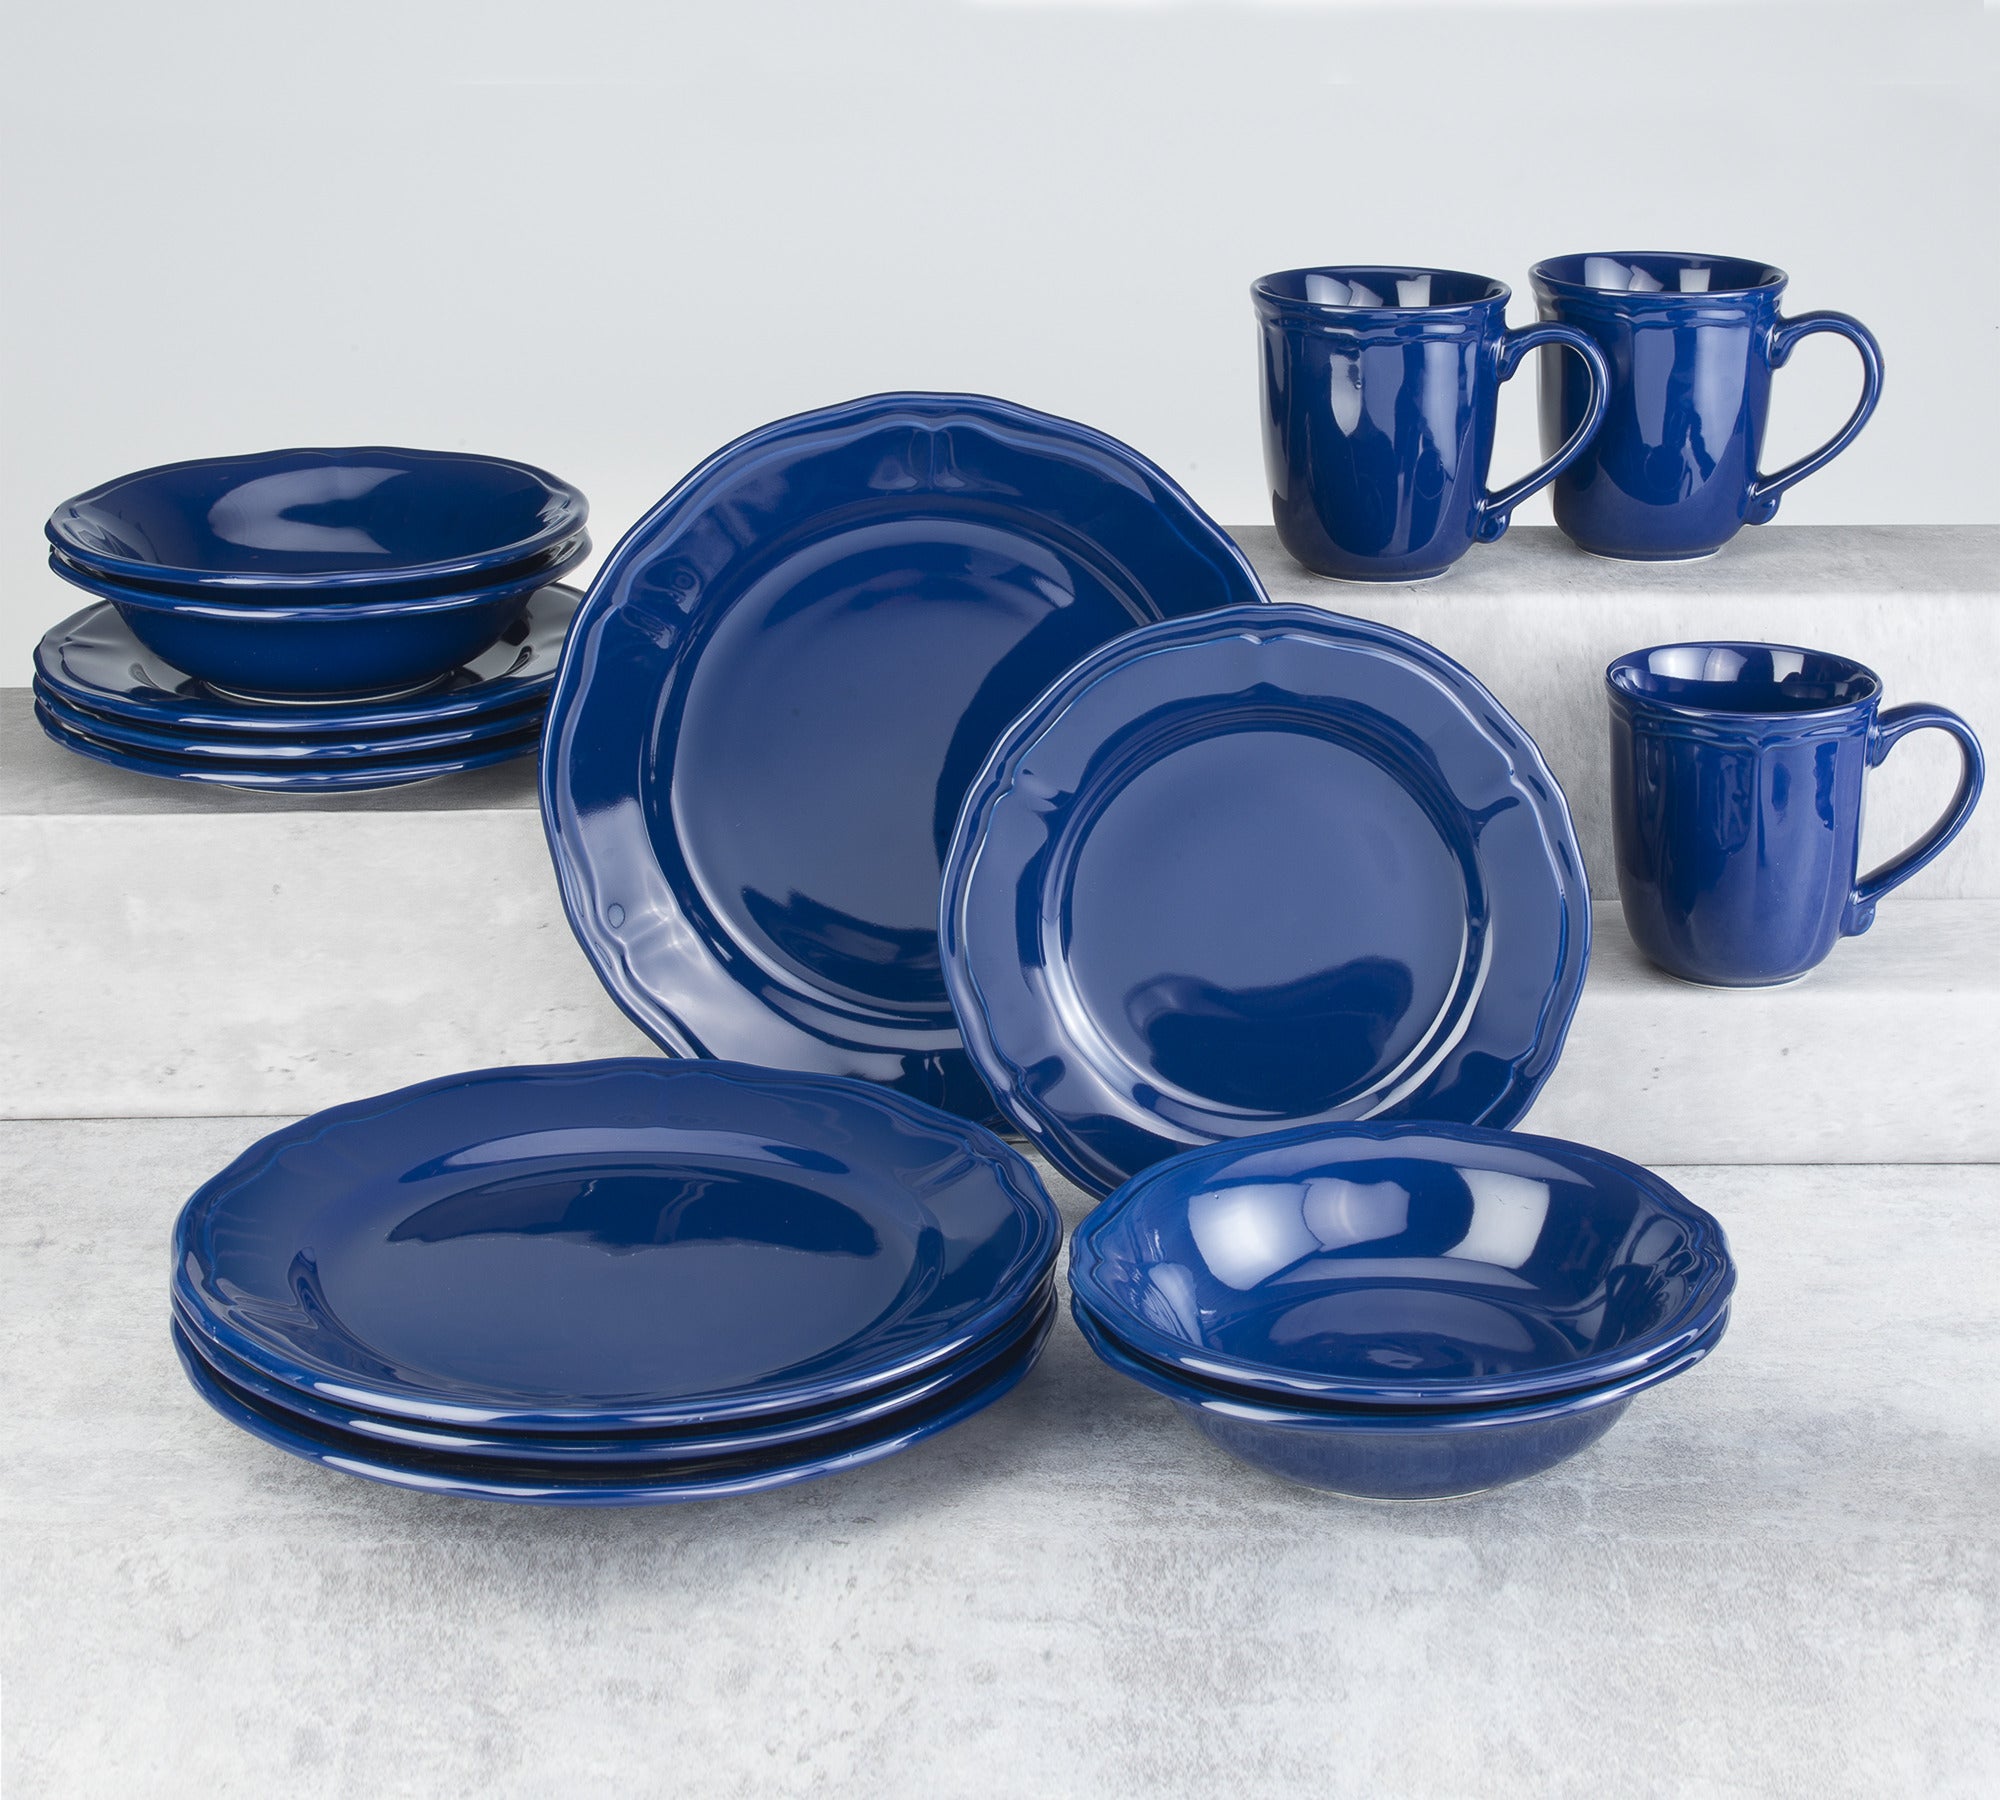 Siena 16 piece Dinnerware Set Cobalt Blue - Euro Ceramica 